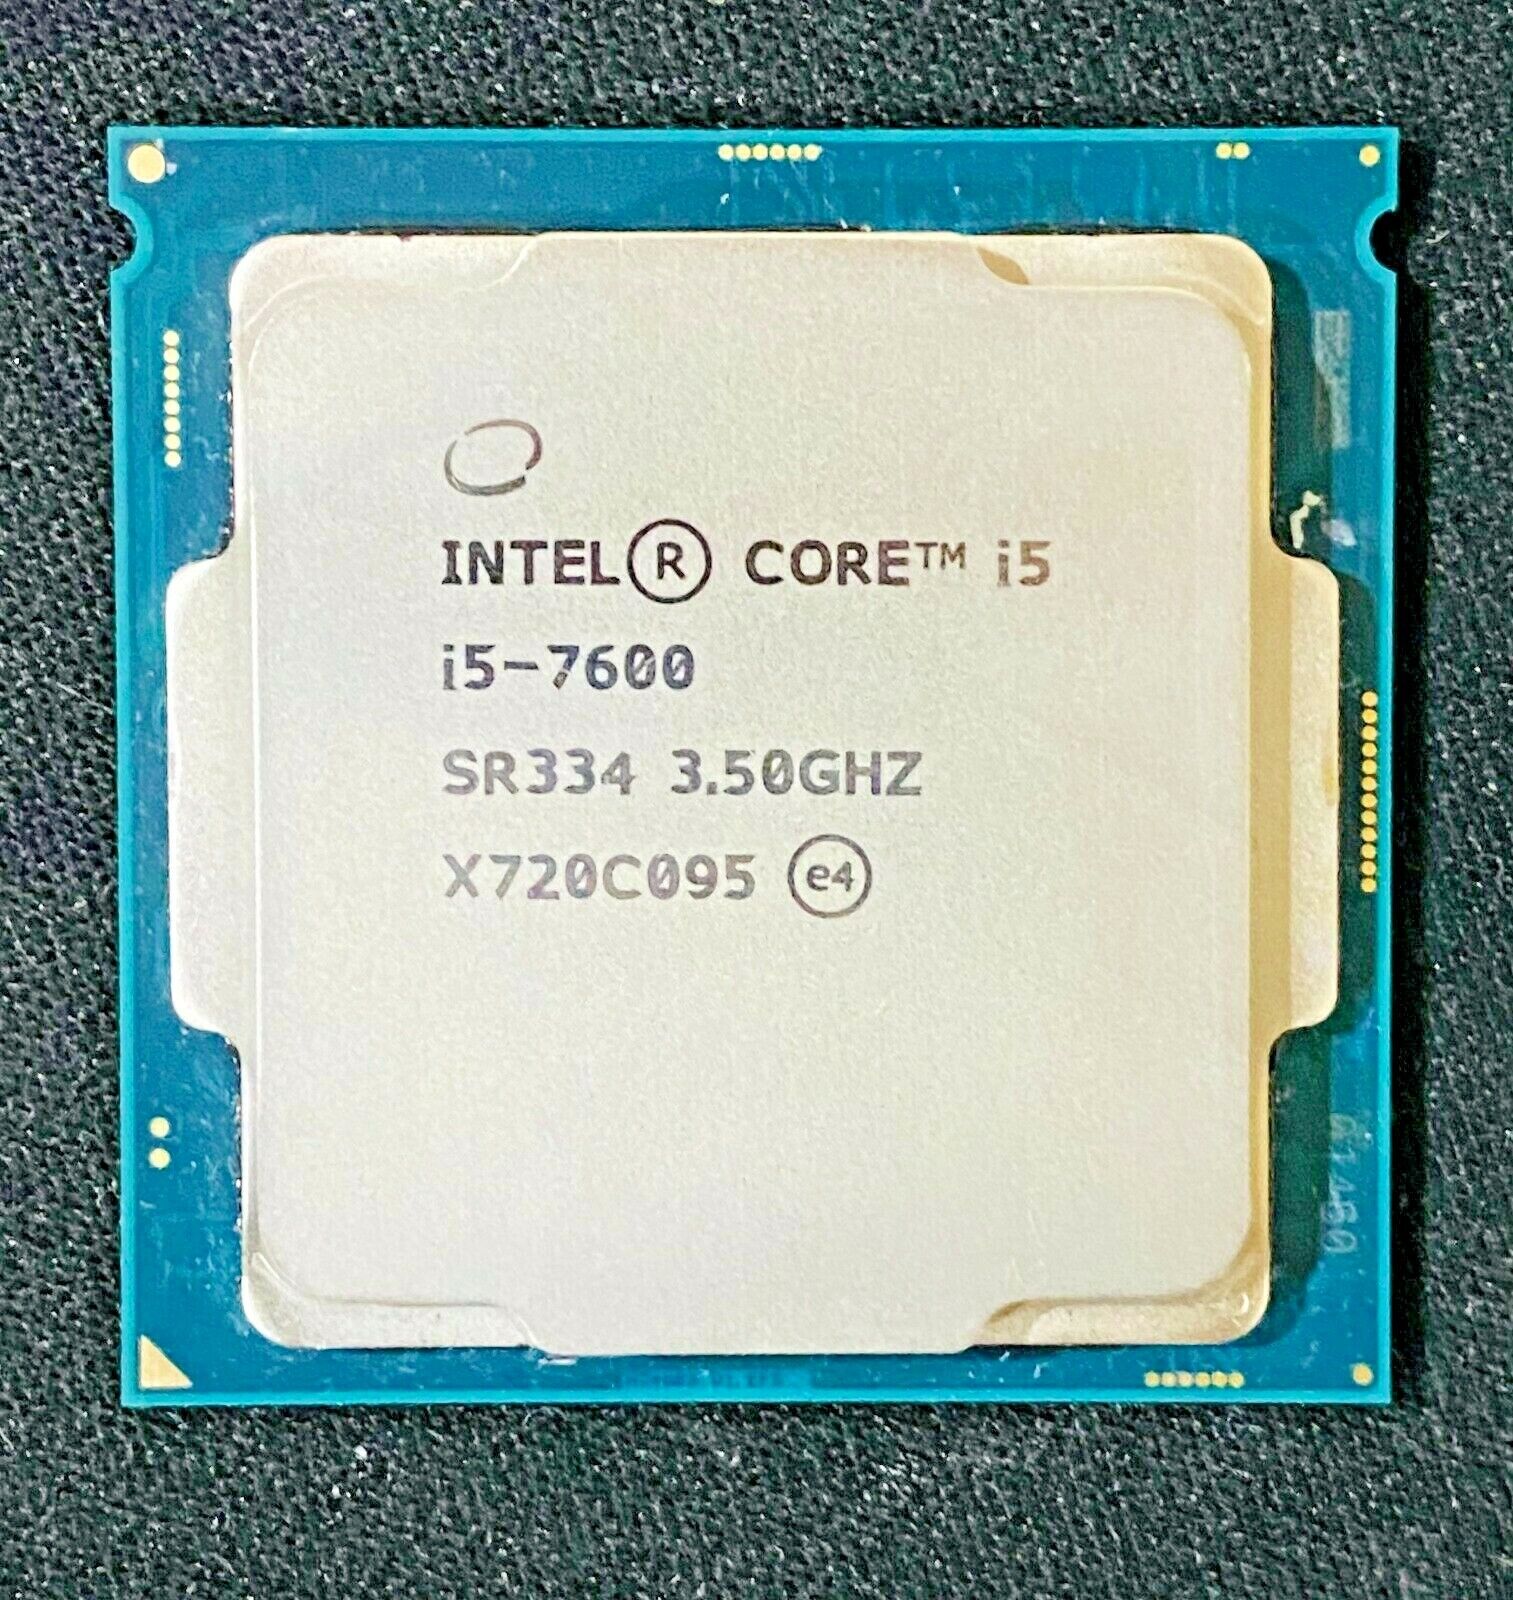 Intel Core i5-7600 CPU Processor Quad-Core 3.5 GHz Socket H4 LGA-1151 65W SR334